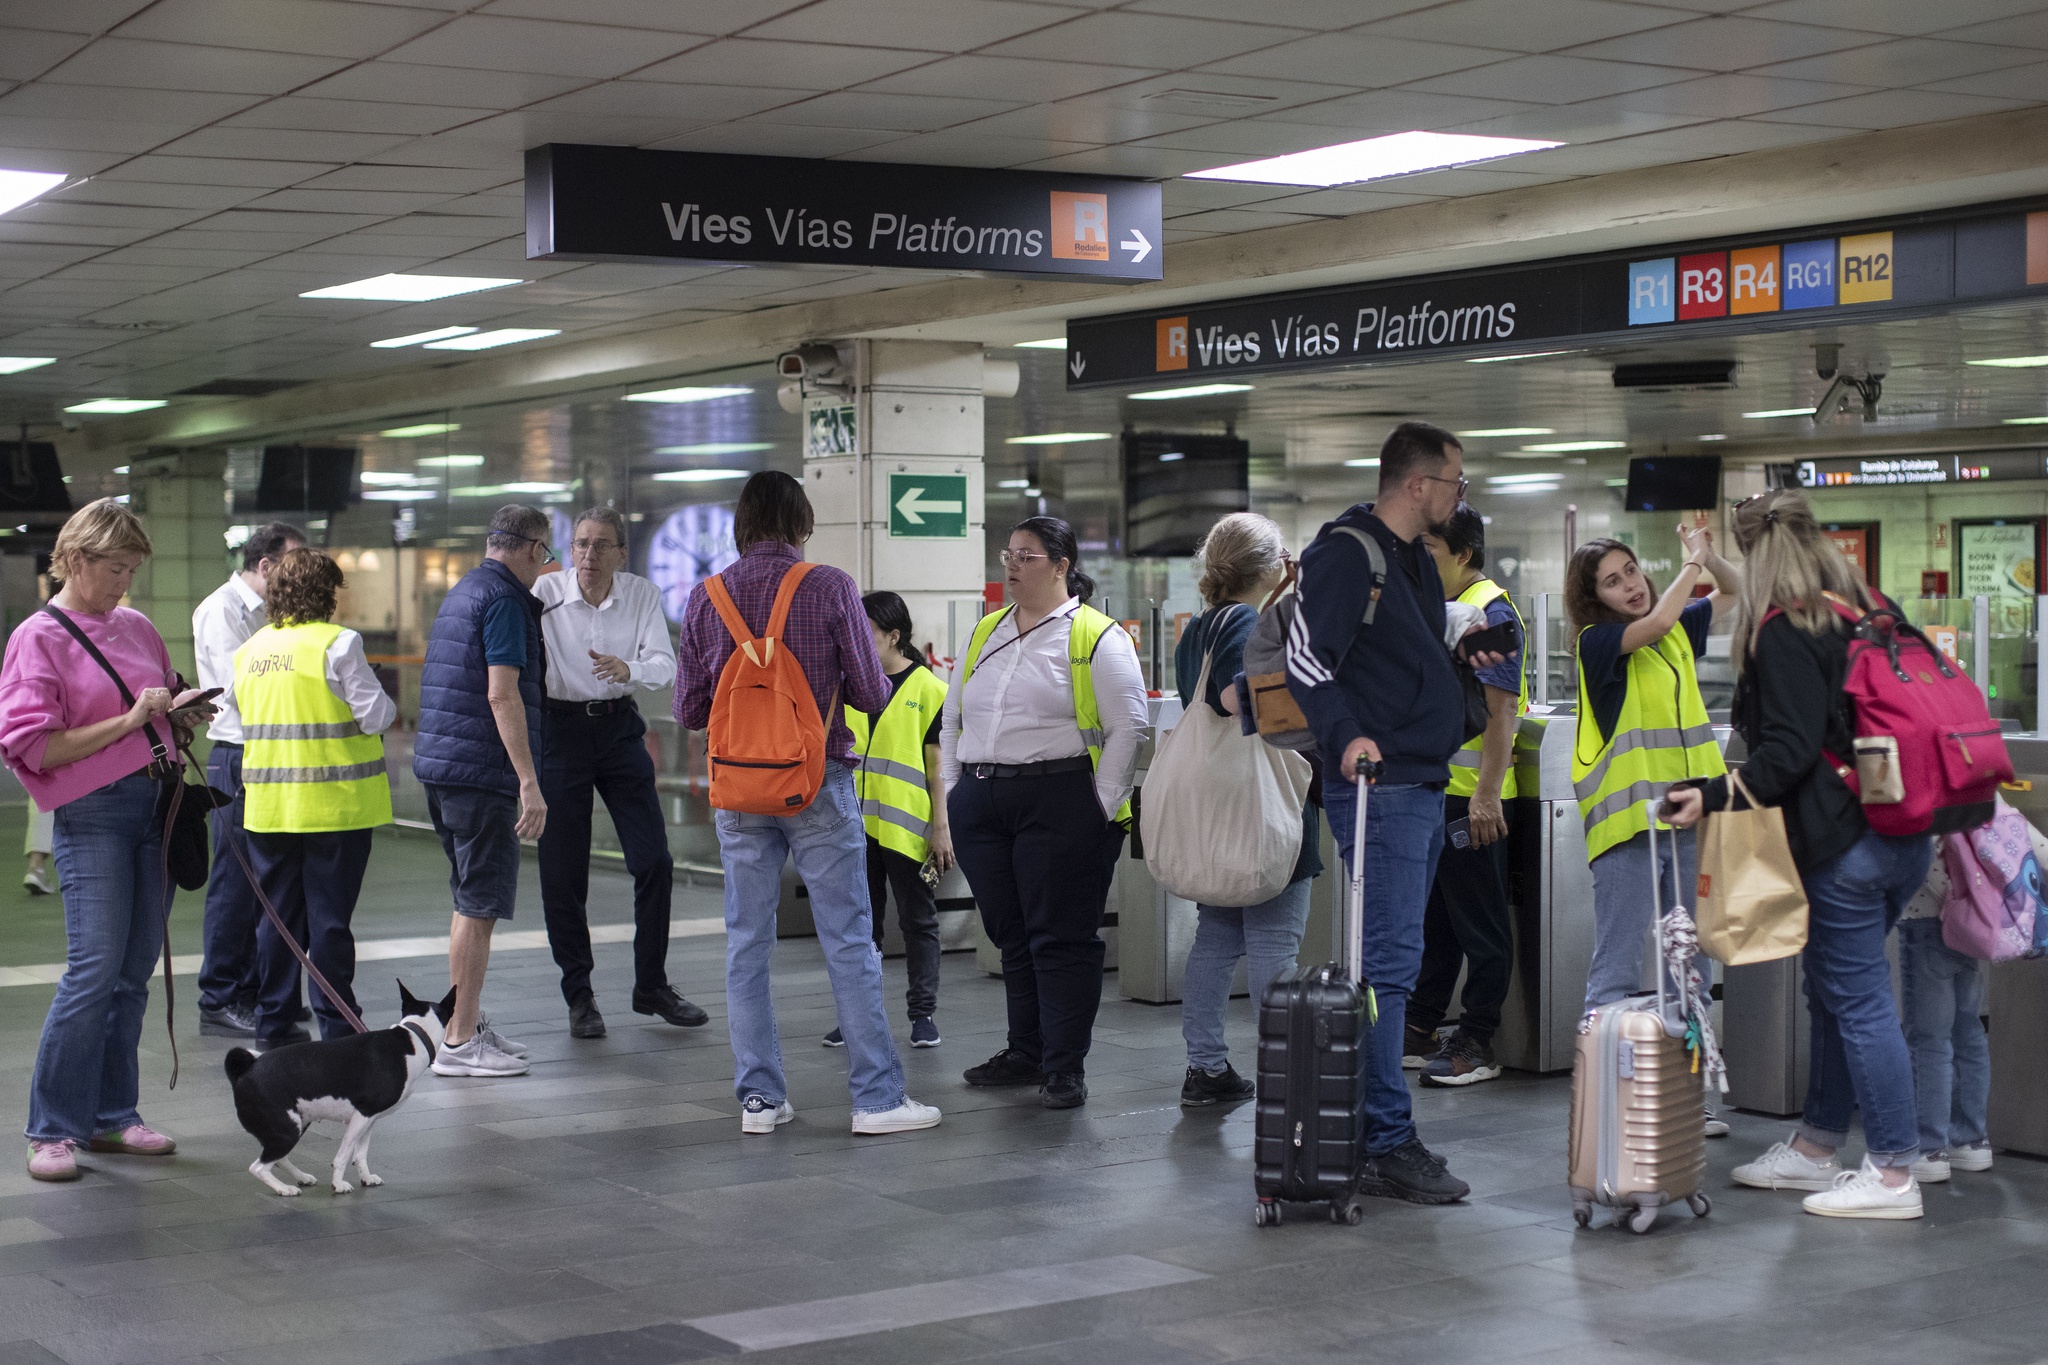 Roubo de cobre deixa Barcelona sem comboios suburbanos em dia de eleições